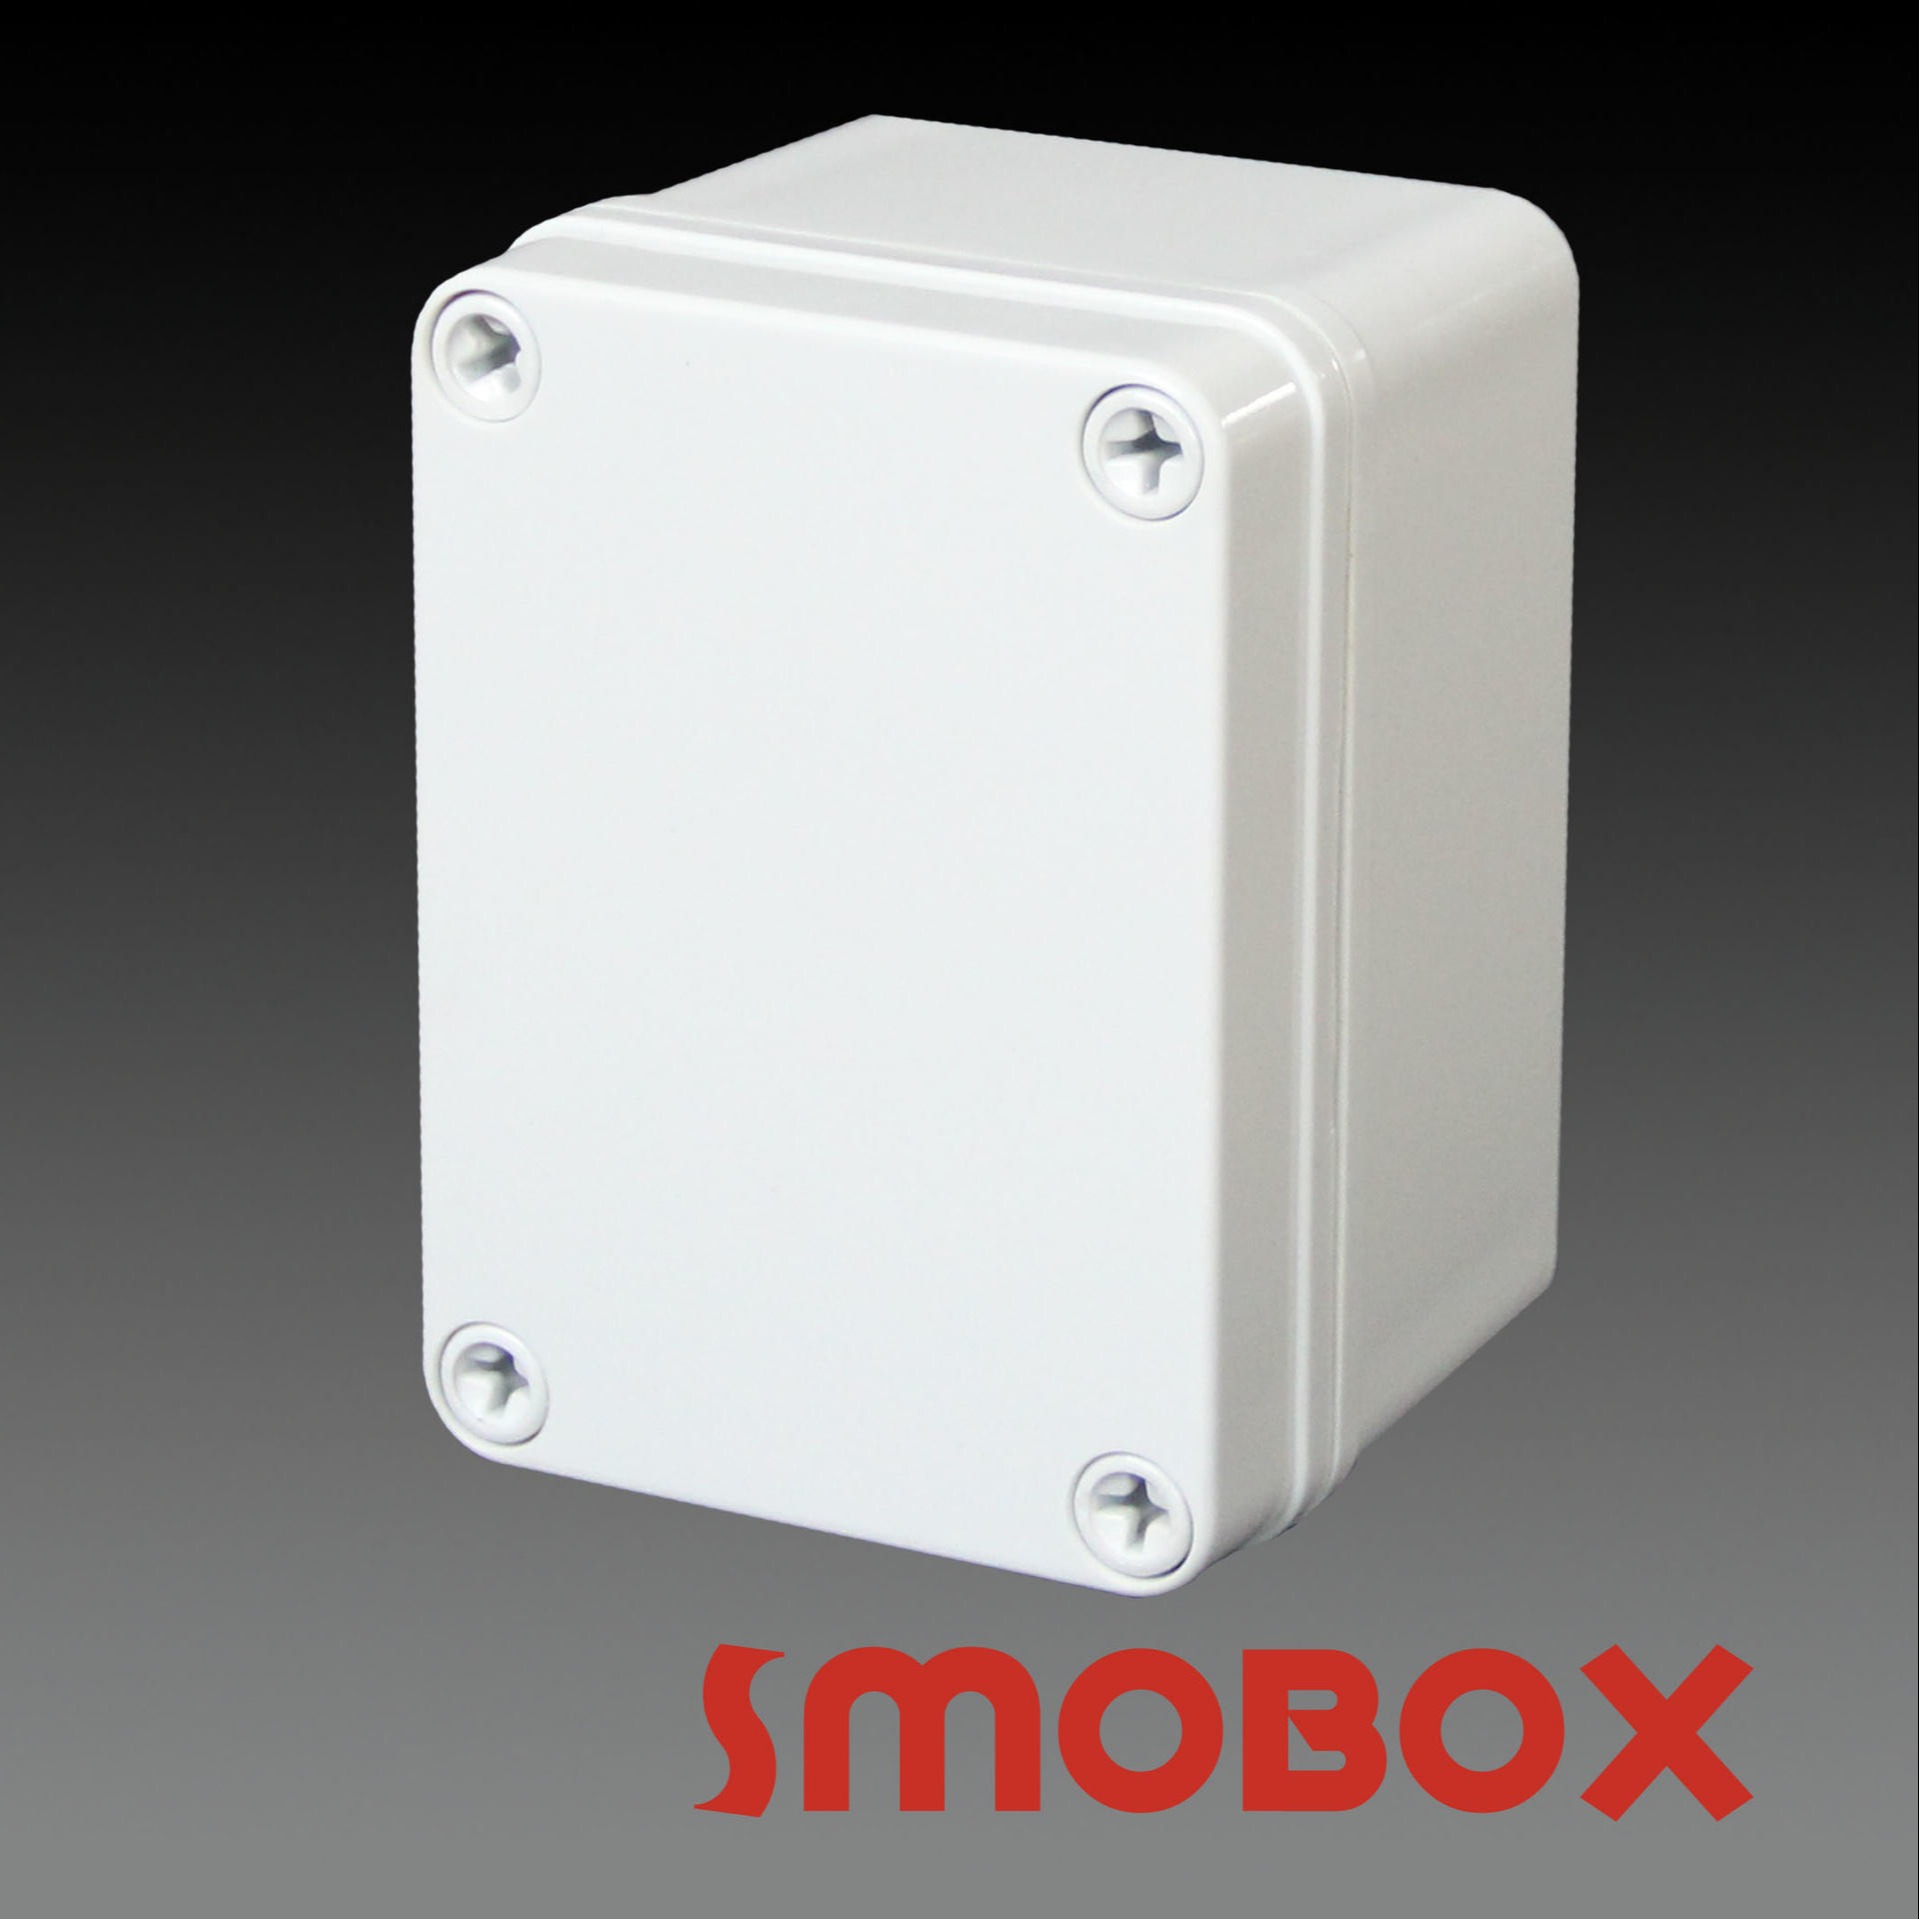 SMOBOX塑料接线箱LD-081107  塑料按钮盒  塑料接线盒  分线按钮  控制外壳 定制加工图片